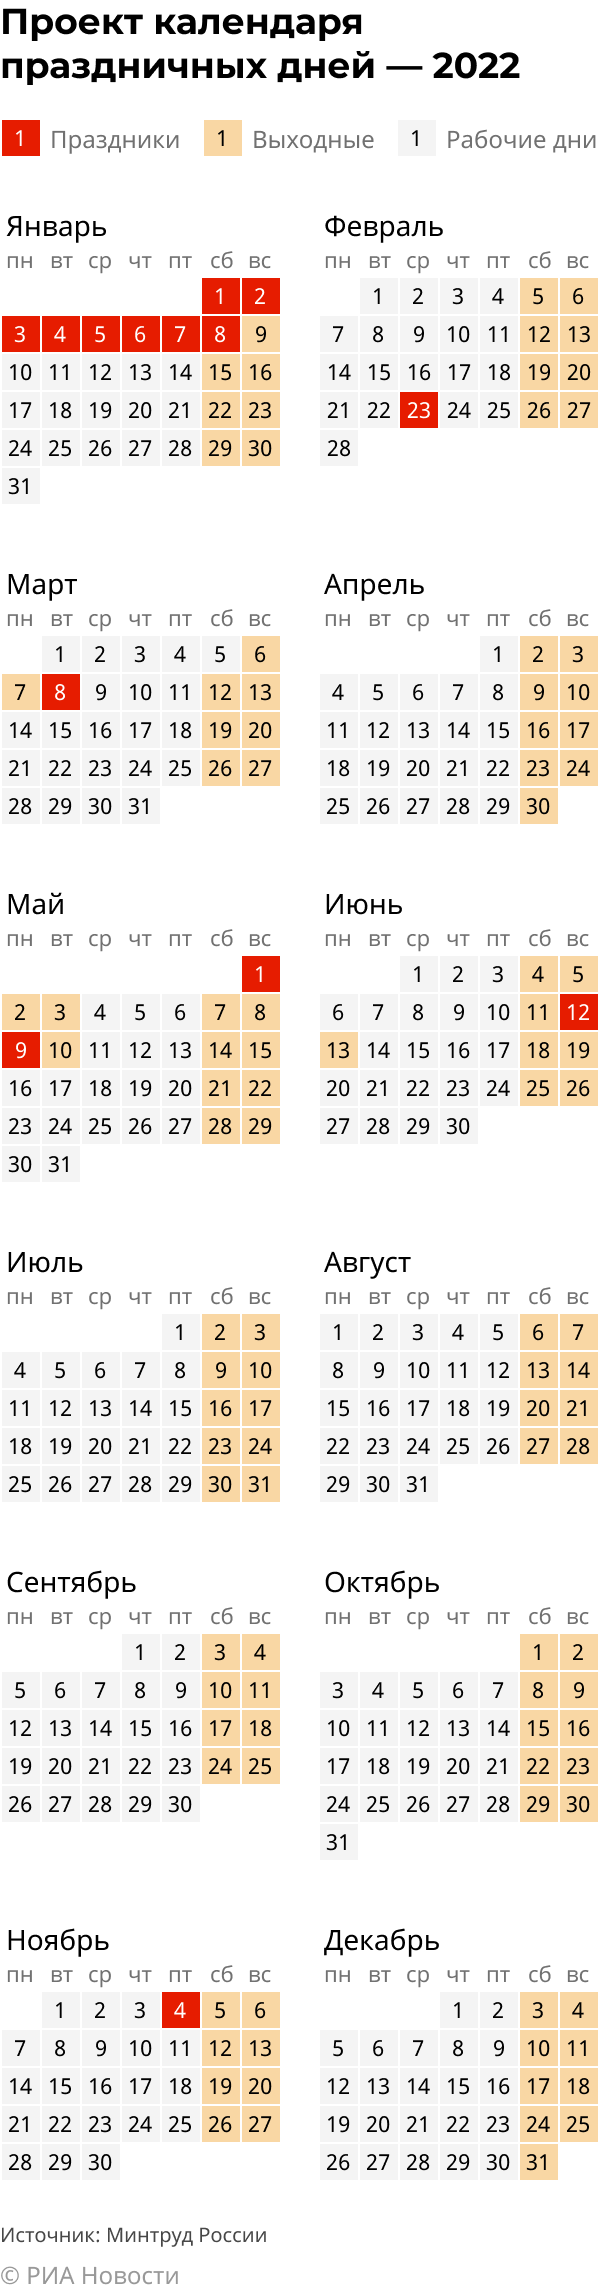 Календарь праздников на 2022 год. Проект Минтруда